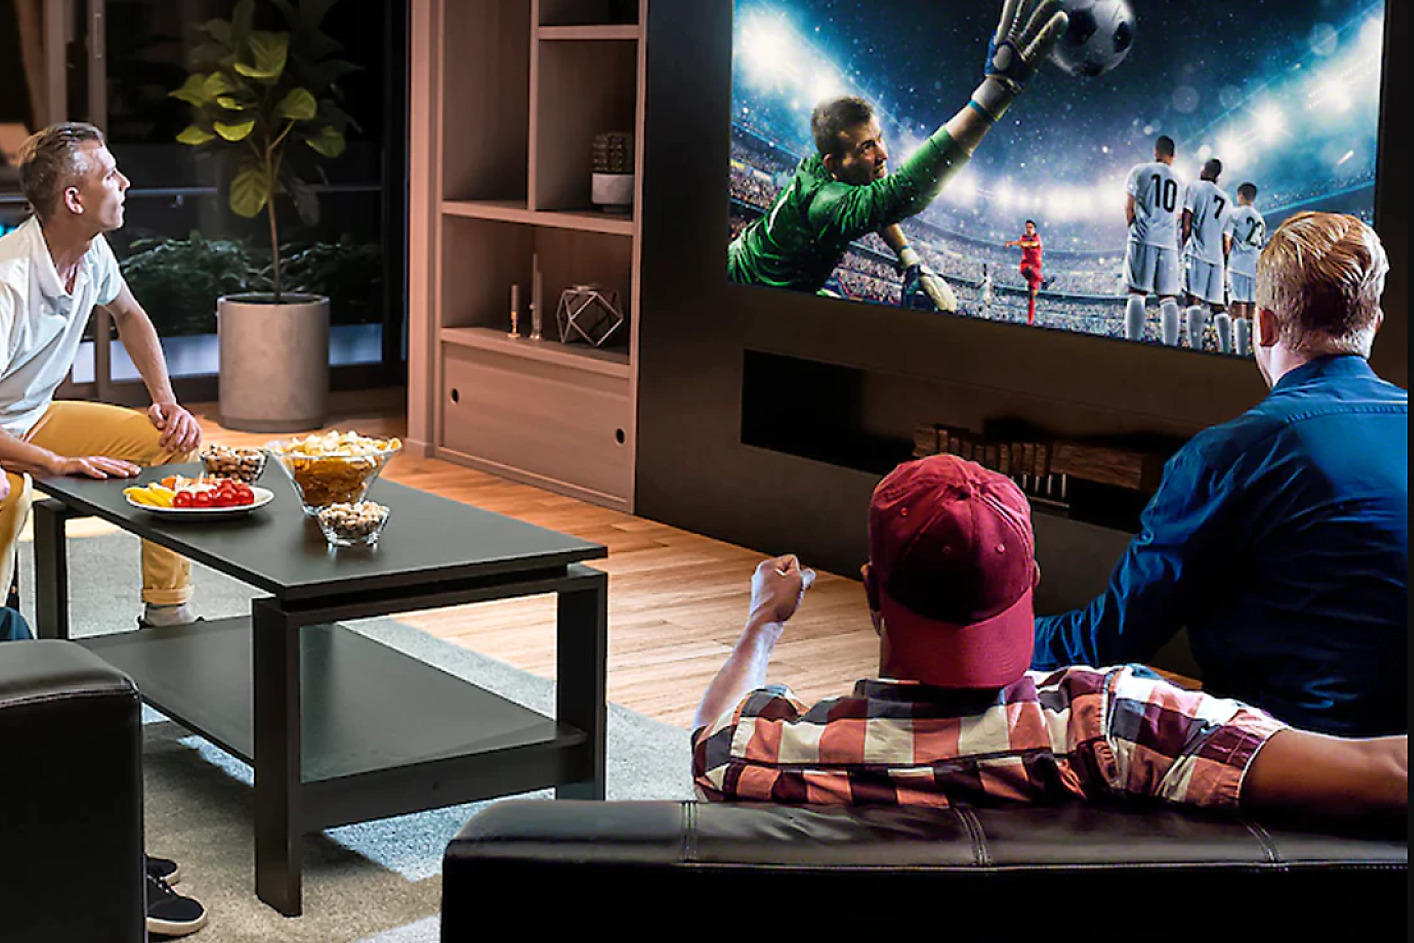 Drie mensen in een woonkamer kijken naar een tv waarop een keeper te zien is die springt om een voetbal te pakken.